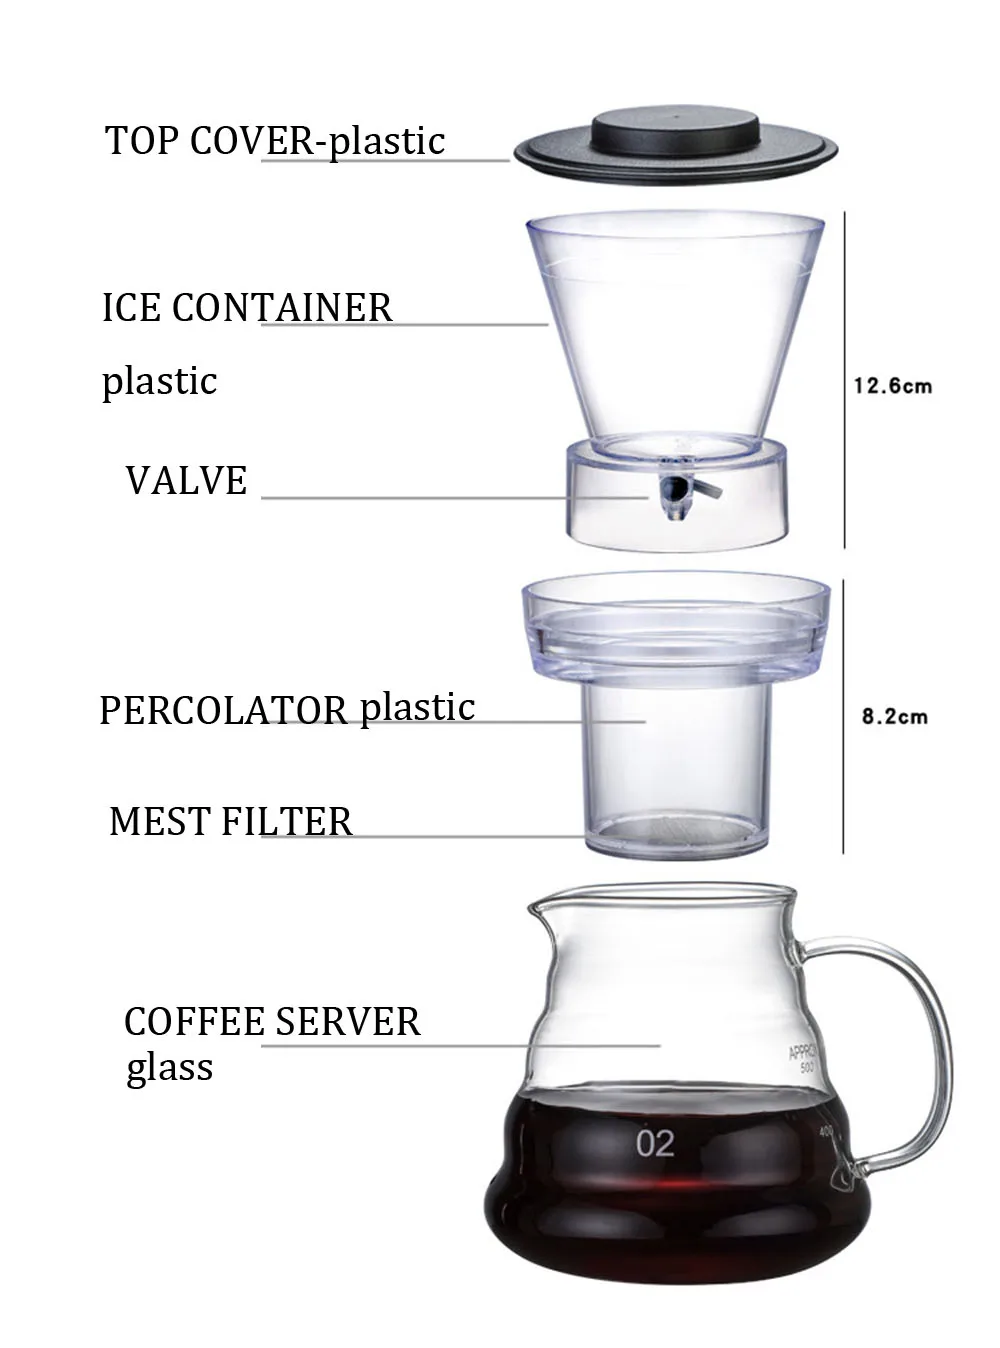 Эко кофе бытовой Iced Кофеварка 600 мл емкость кофе диапазон сервера инструменты бариста